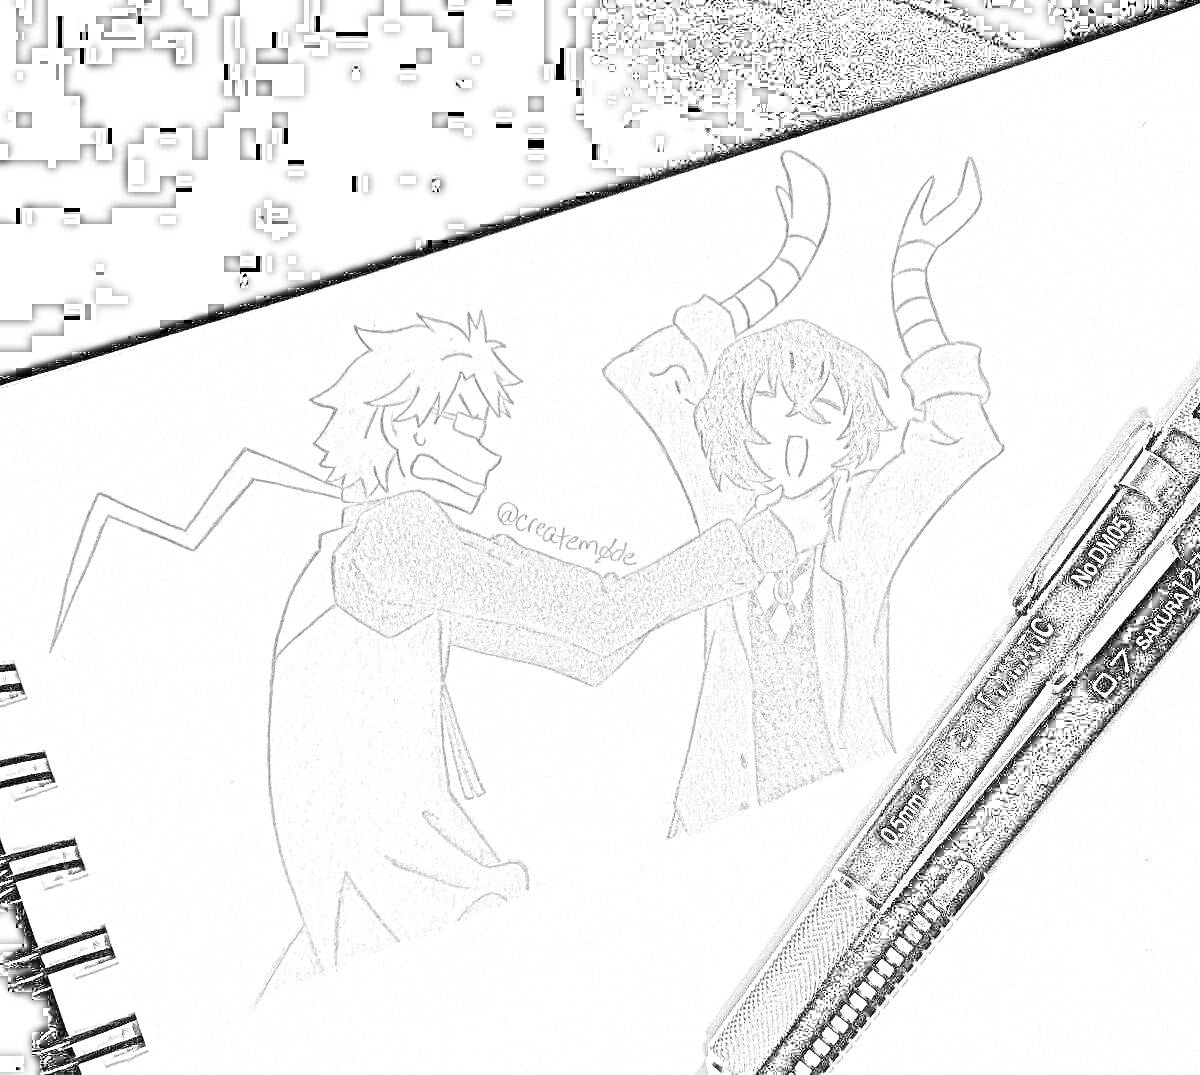 Раскраска Два персонажа из аниме, один персонаж с короткими взъерошенными волосами держит за шею другого персонажа с волосами средней длины и изогнутыми руками. На переднем плане лежат две ручки.